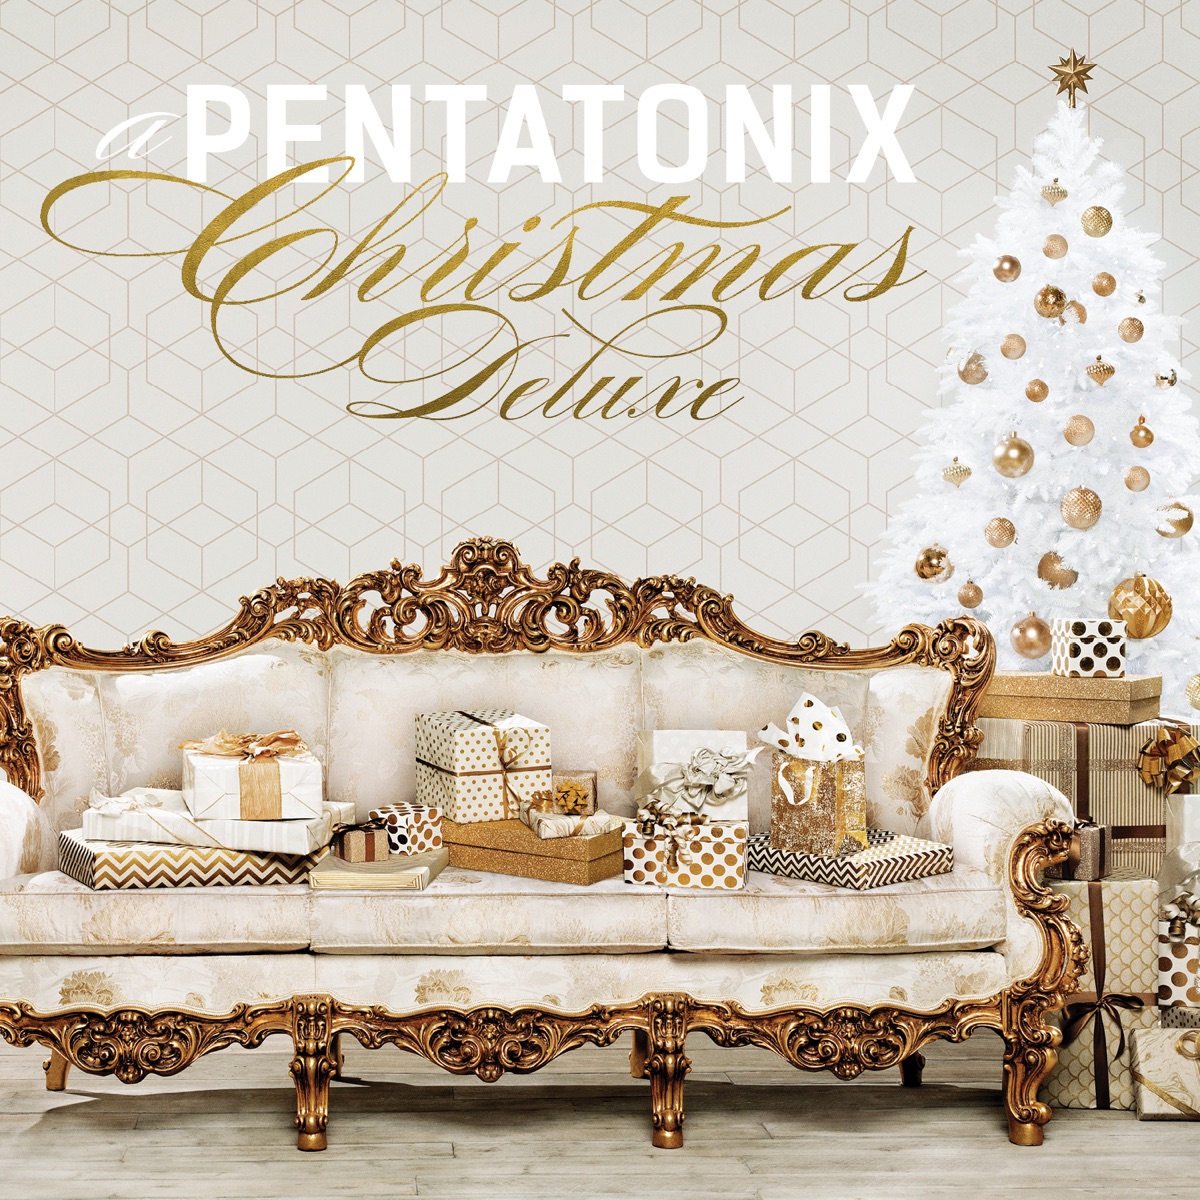 Pentatonix - A Pentatonix Christmas (Deluxe)